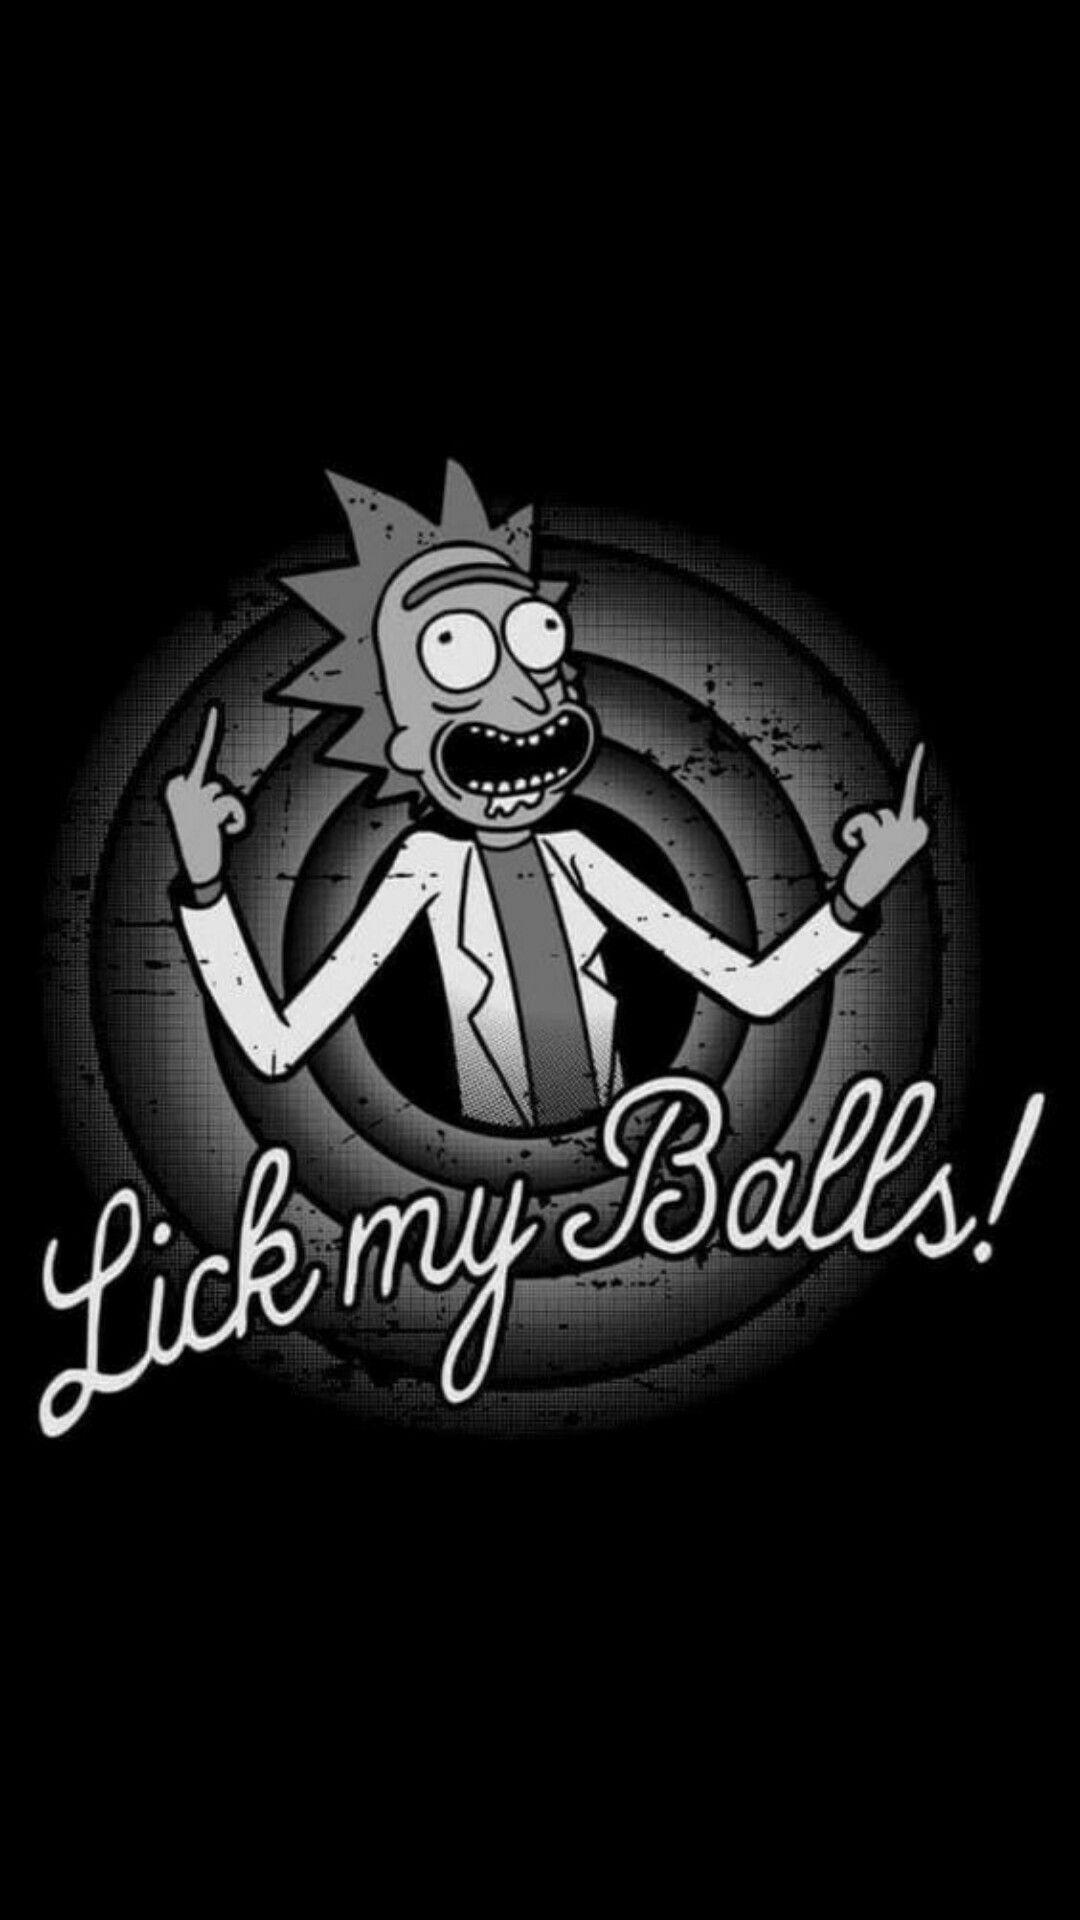 Rick and Morty Funny Wallpapers - Top Những Hình Ảnh Đẹp